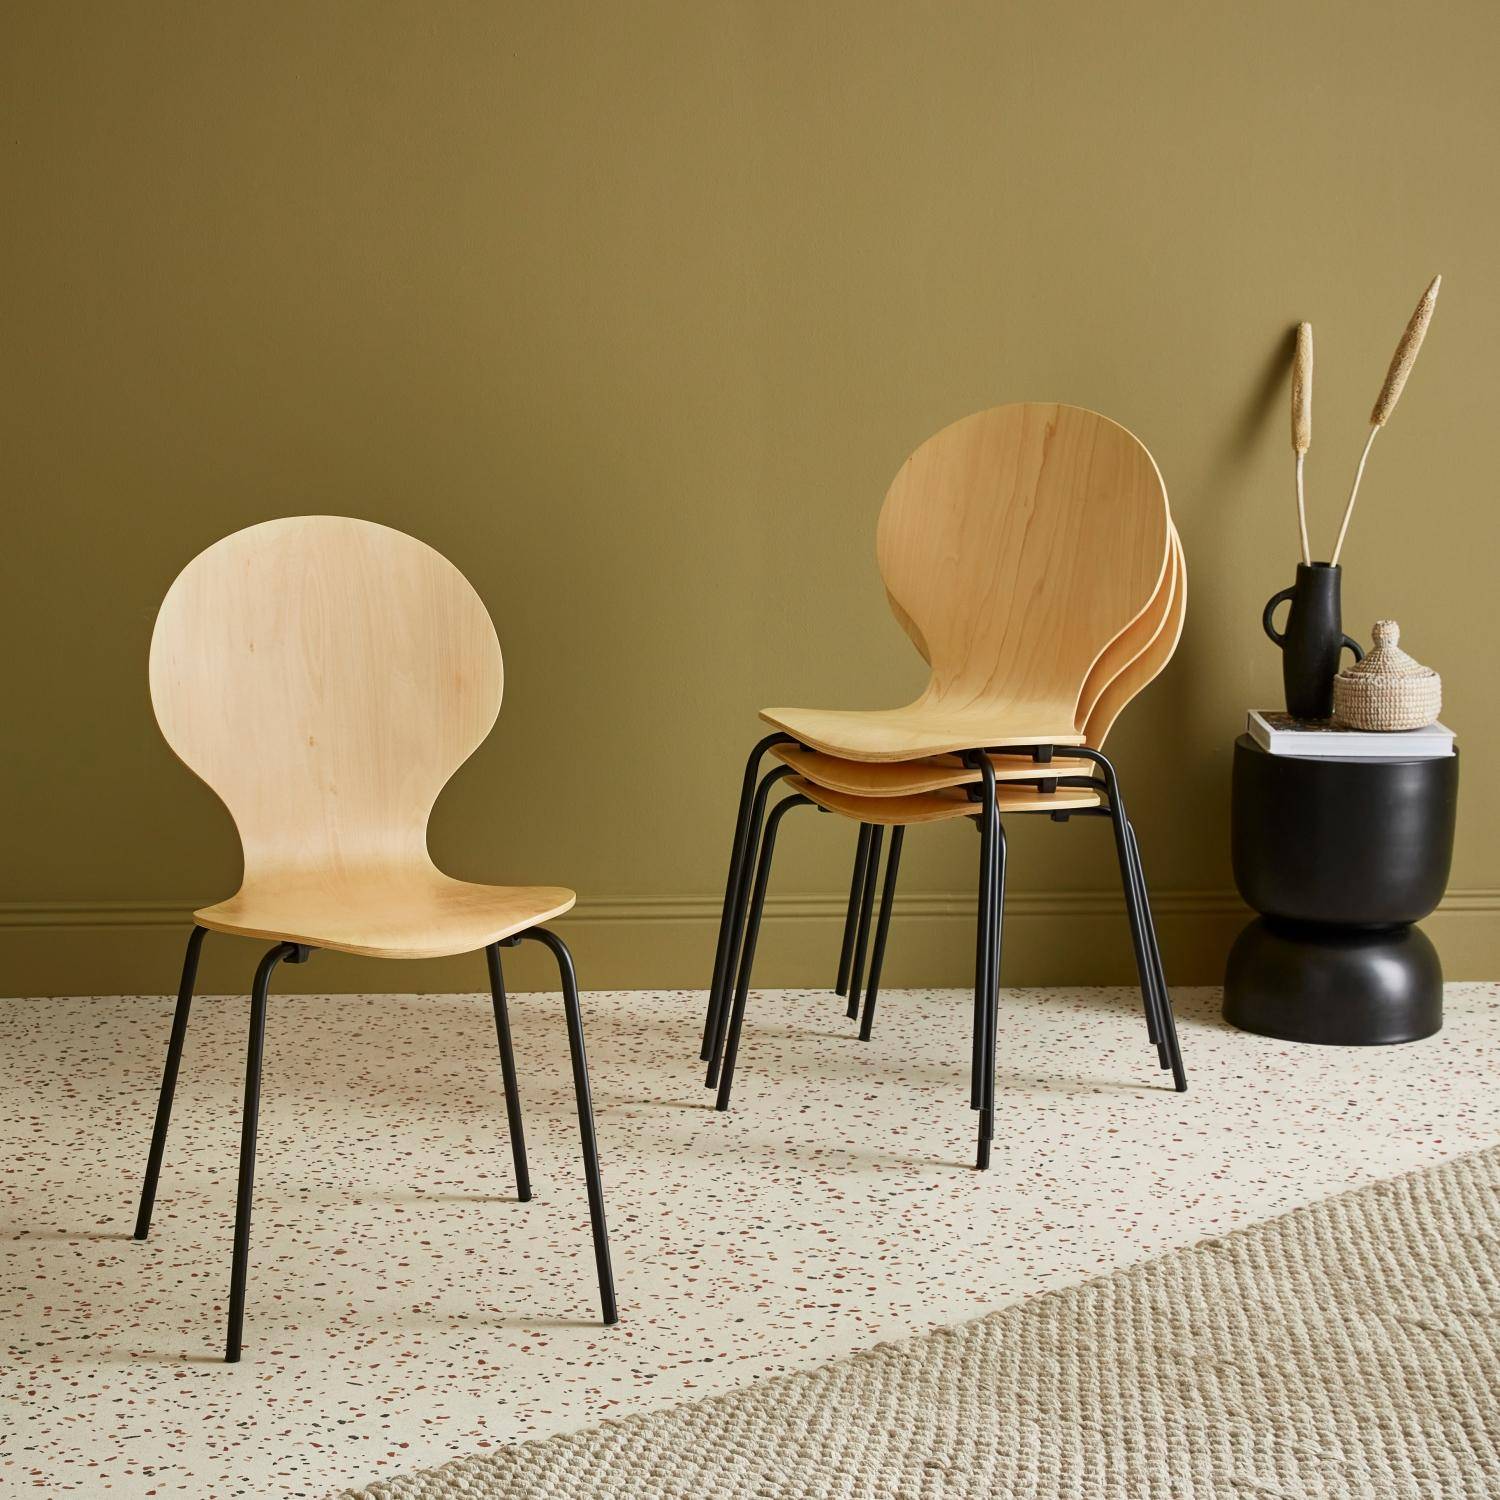 Lot de 4 chaises naturelles, rétro empilables, bois d'hévéa et contreplaqué, pieds en acier, Naomi, L 43 x P 48 x H 87cm,sweeek,Photo2